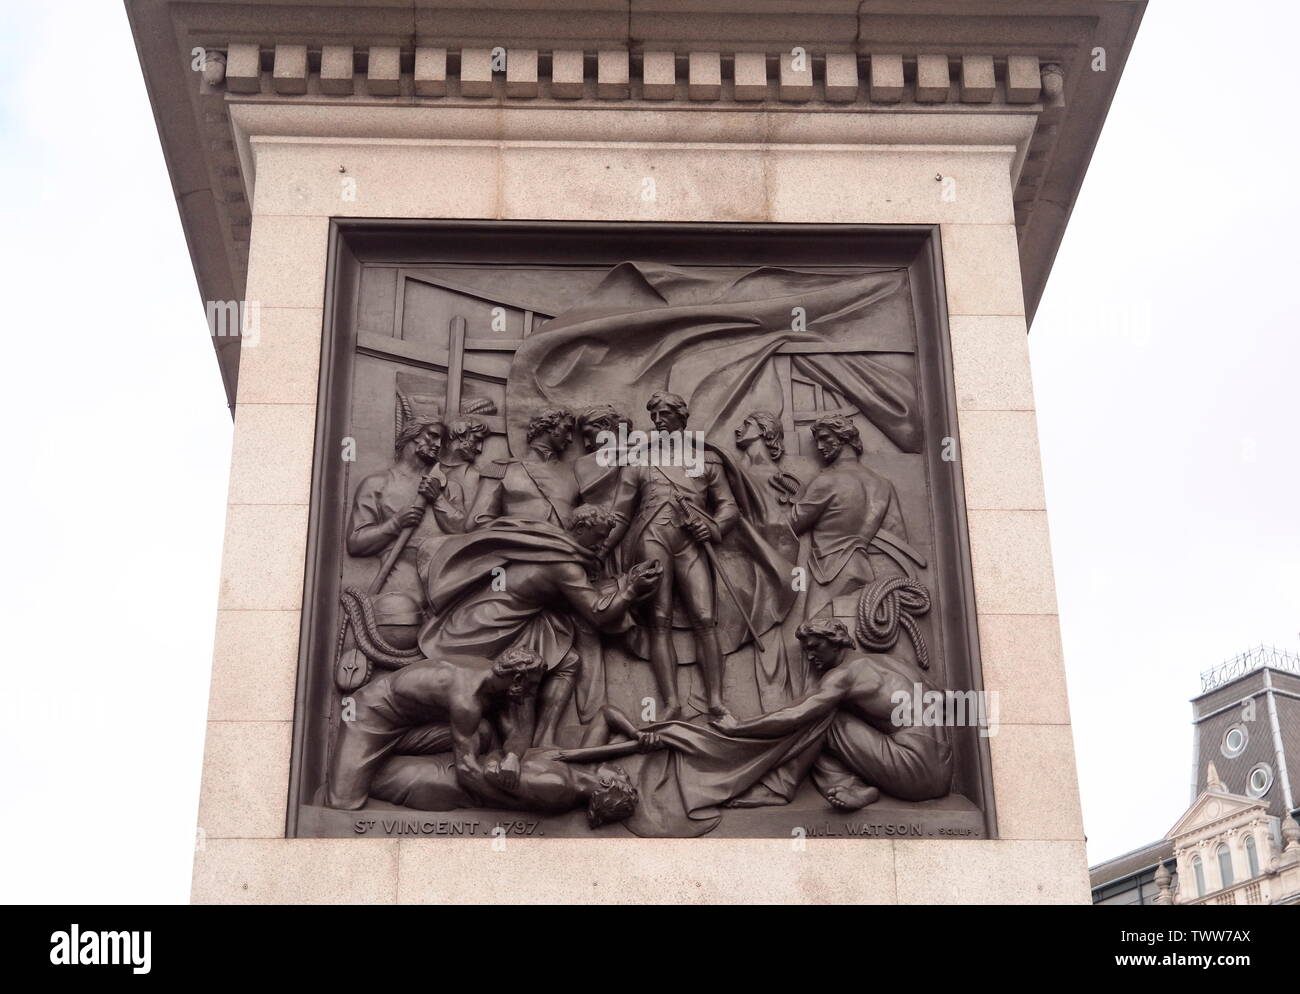 AJAXNETPHOTO. 2018. LONDON, ENGLAND. - TRAFALGAR HELD - bronze Plakette von Bildhauer M.L. WATSON, Admiral Horatio Nelson IN DER SCHLACHT VON ST. VINCENT, 1797, am Fuße der Nelson's Column auf dem Trafalgar Square. Foto: Jonathan Eastland/AJAX REF: GXR182009 7564 Stockfoto